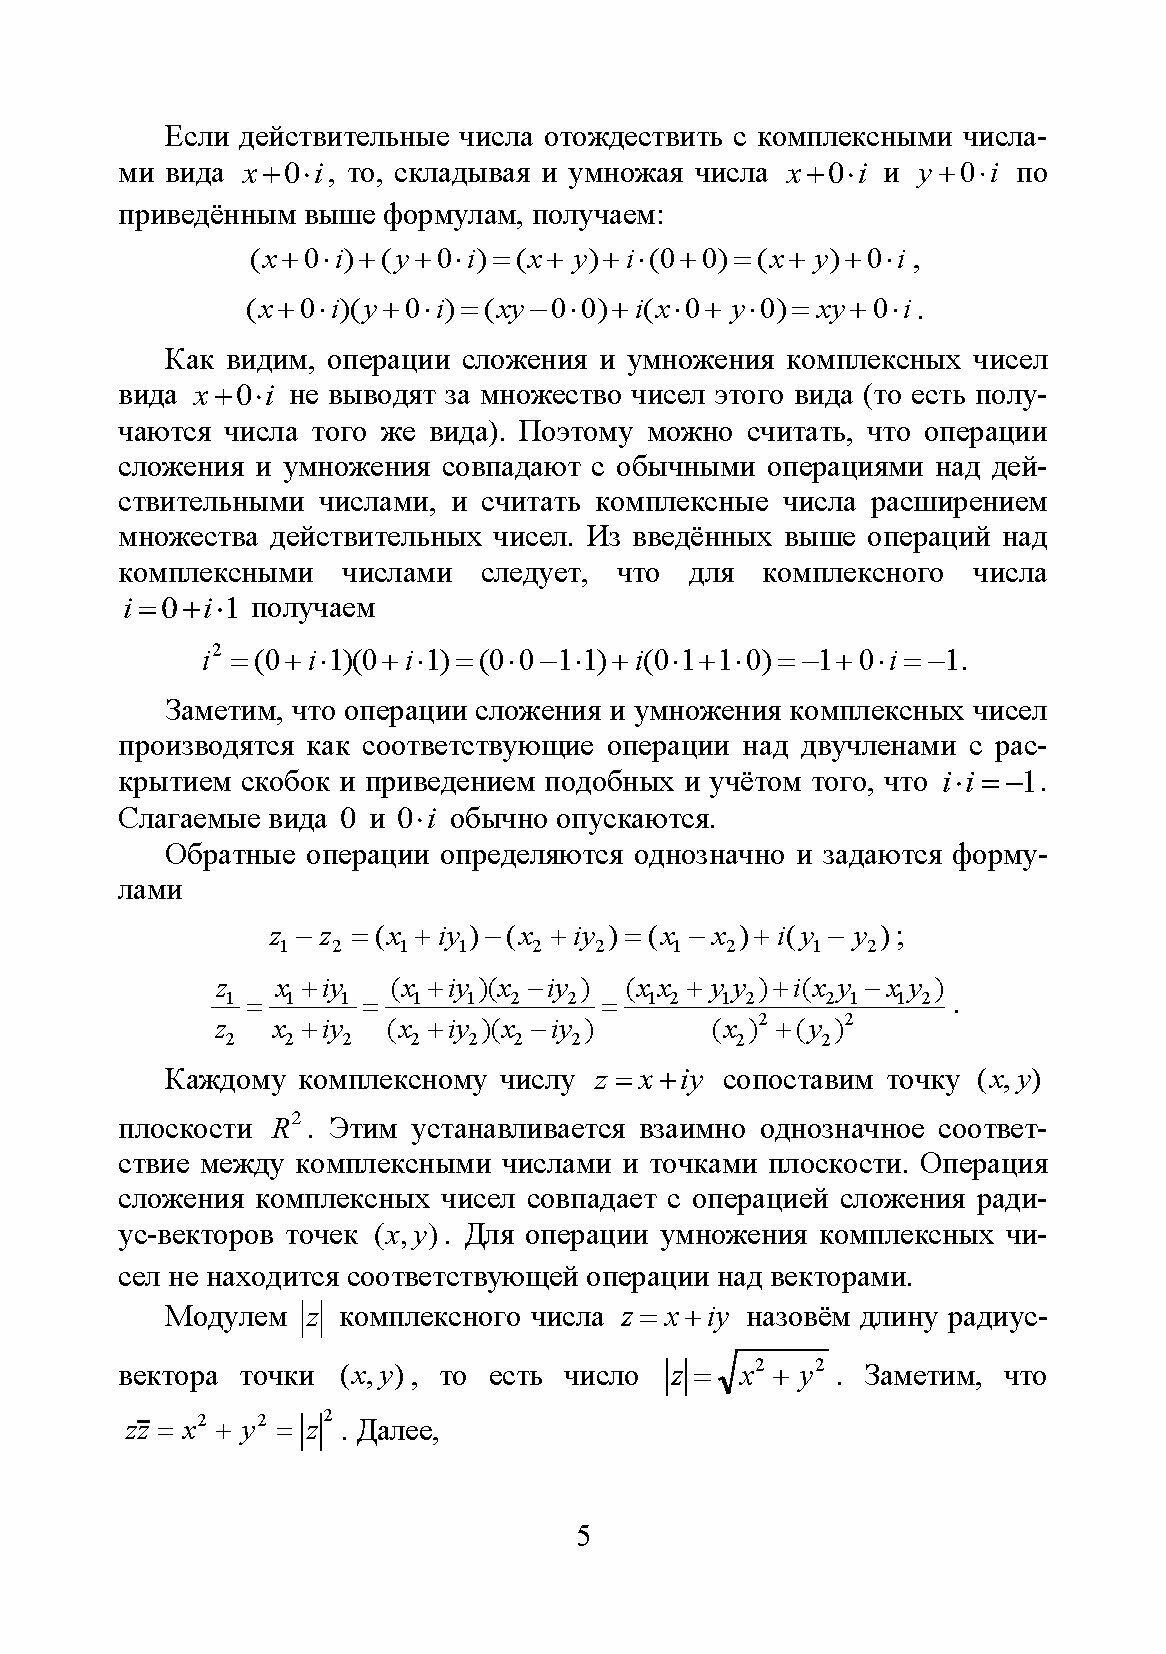 Практикум по теории функций комплексного переменного, теории рядов, операционному исчислению - фото №4